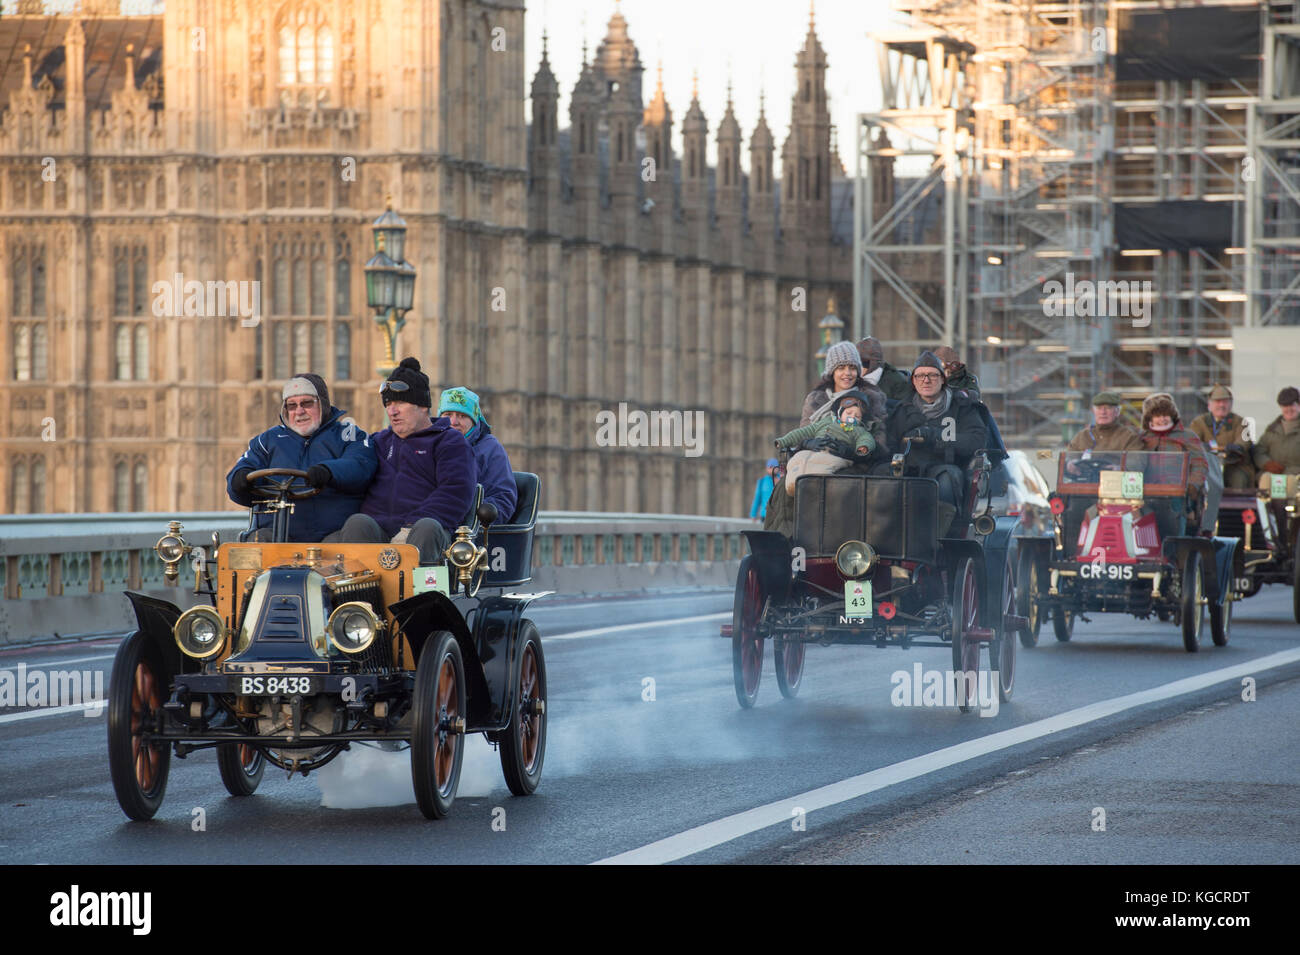 5 novembre 2017. Bonhams de Londres à Brighton, la course automobile vétéran, la plus longue course automobile au monde, 1902 Renault sur le pont de Westminster. Banque D'Images